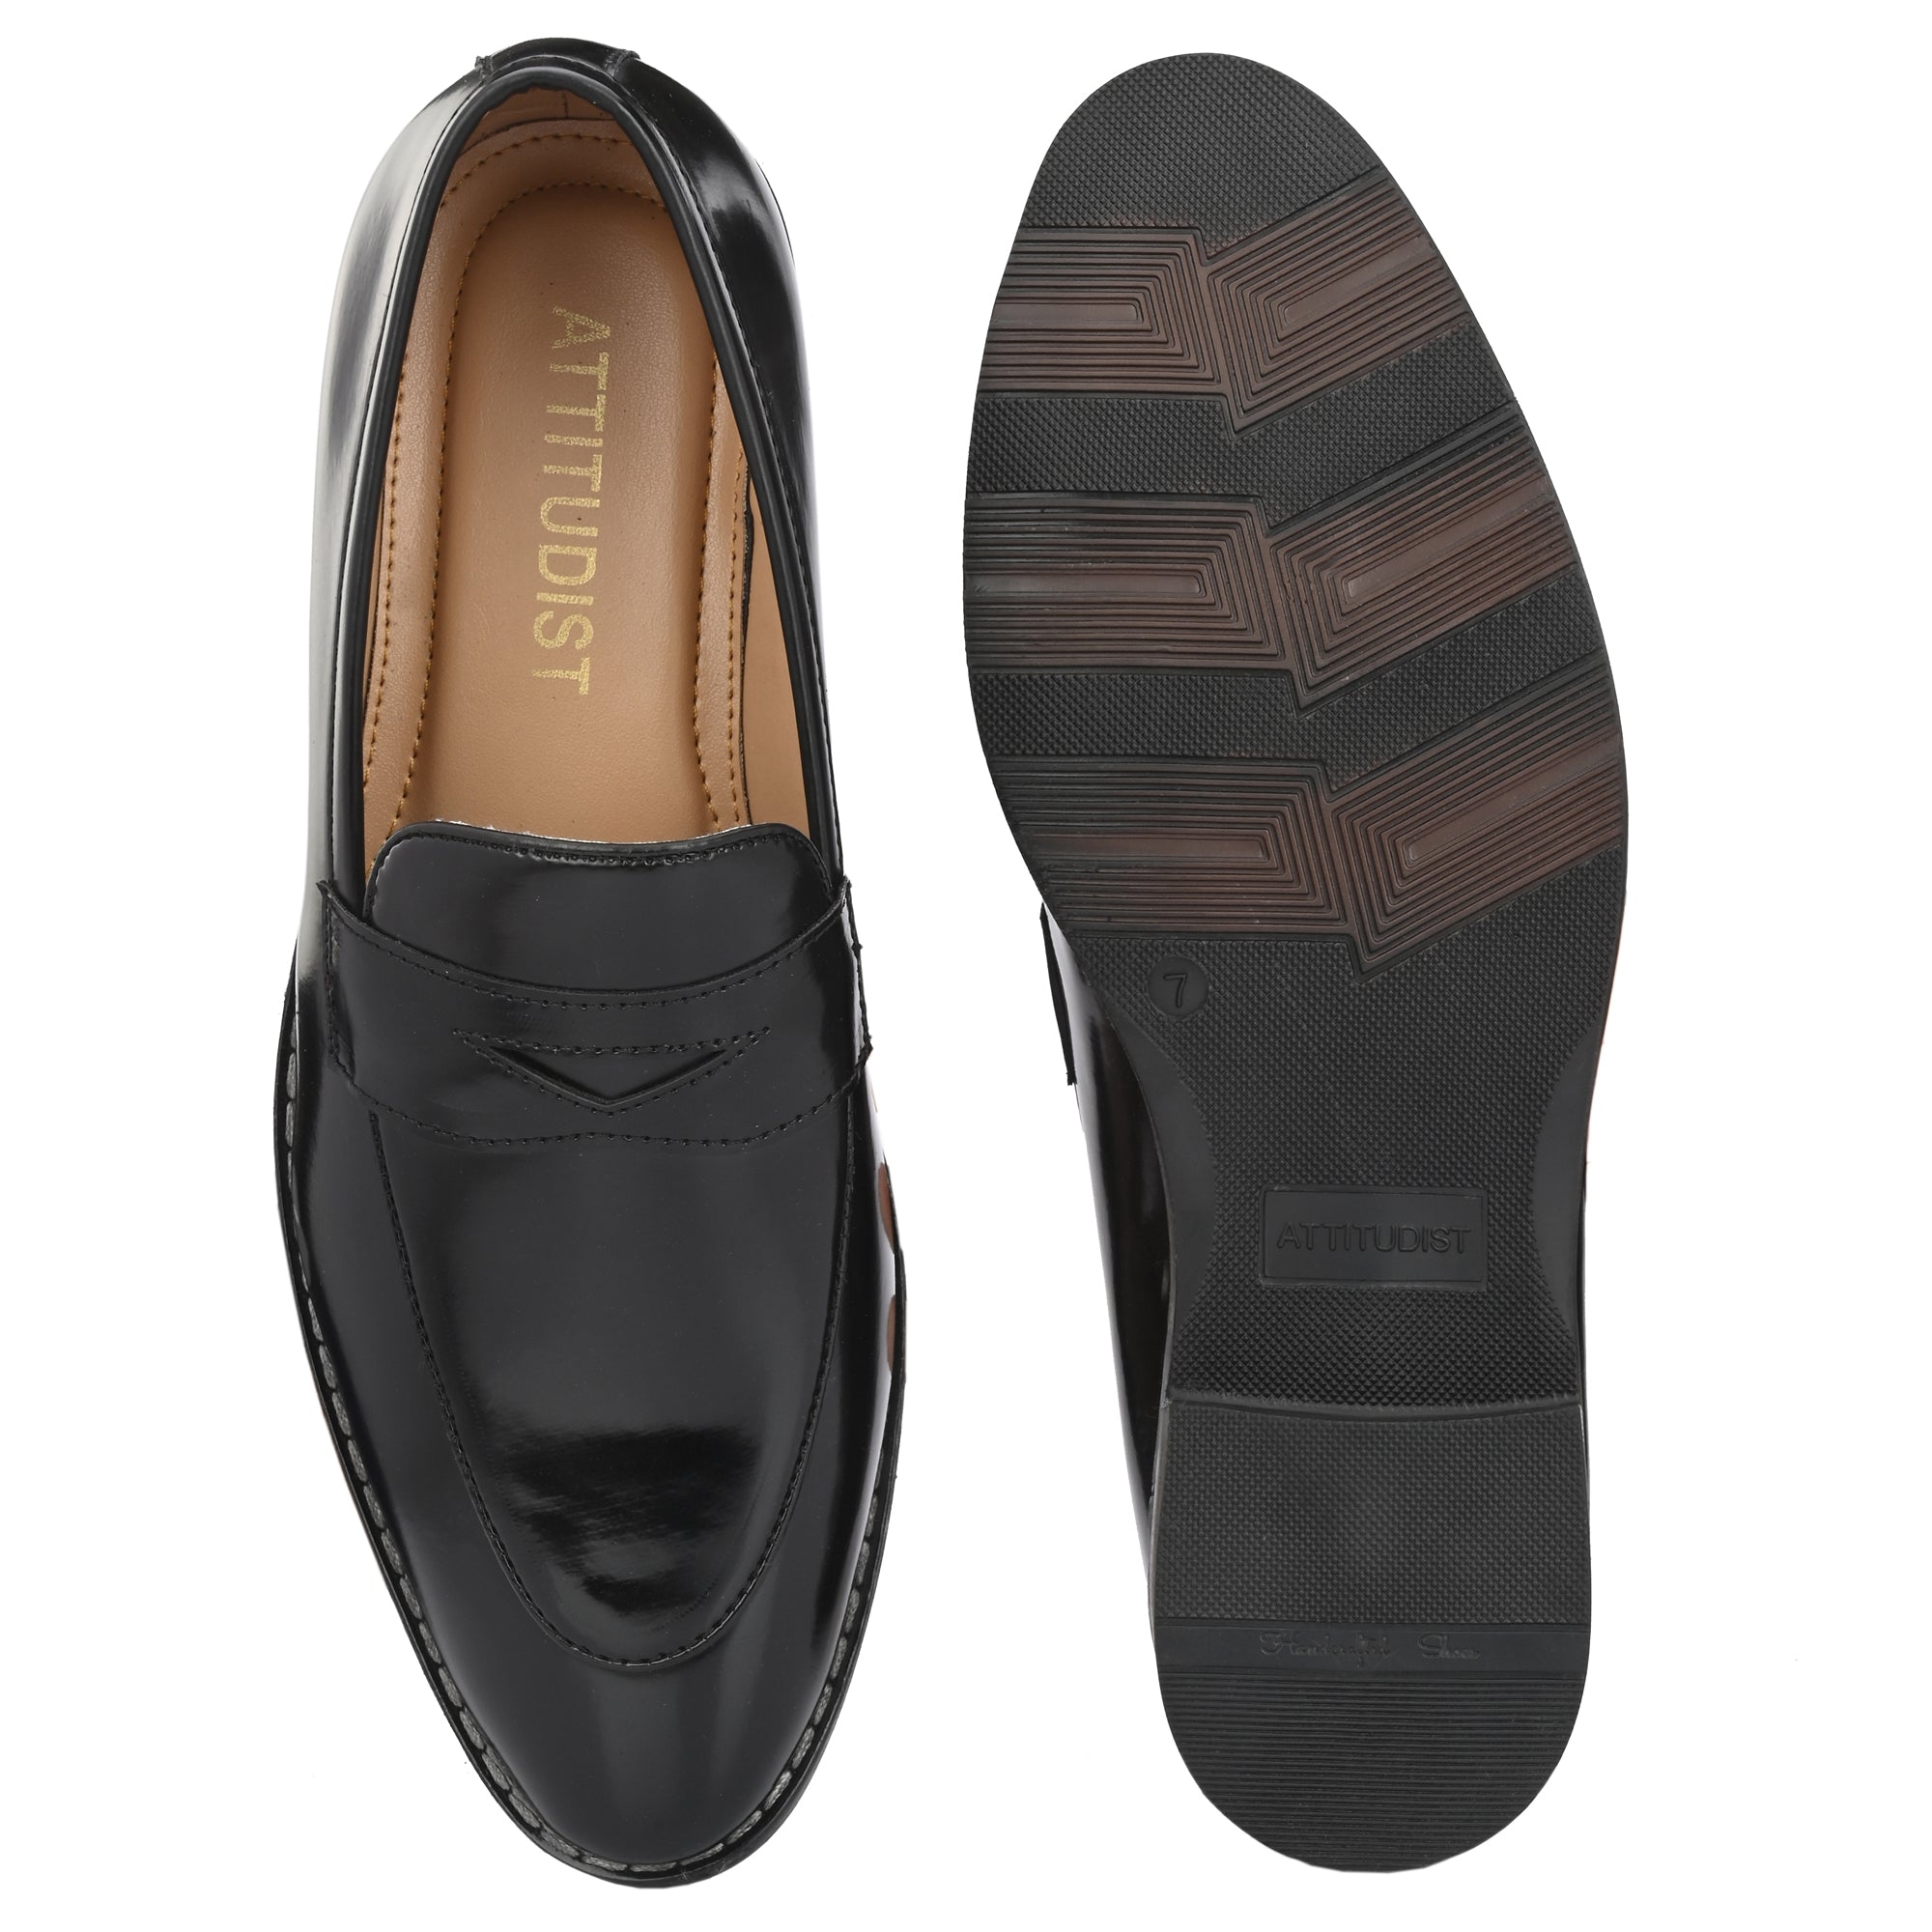 black-loafers-attitudist-shoes-for-men-sp8a